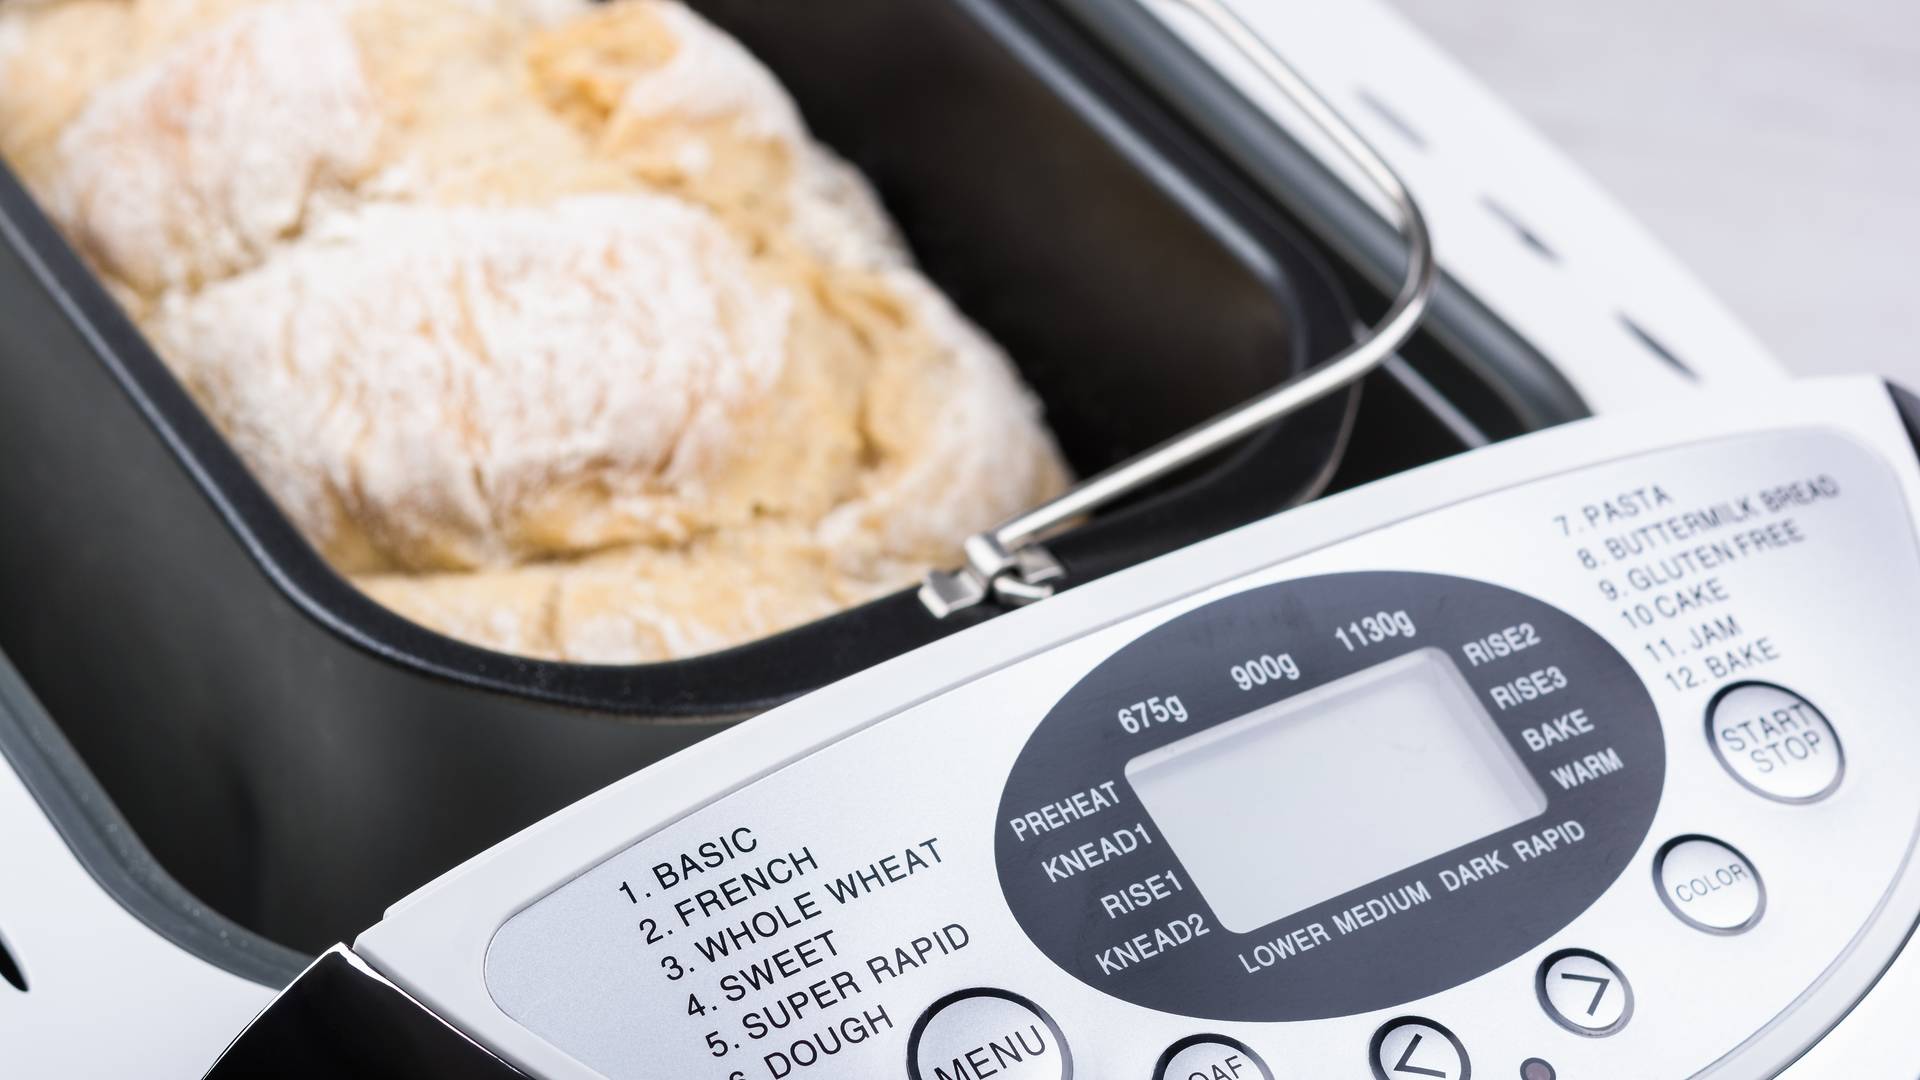 Wypiekacz do chleba — sposób na świeże pieczywo bez wychodzenia z domu